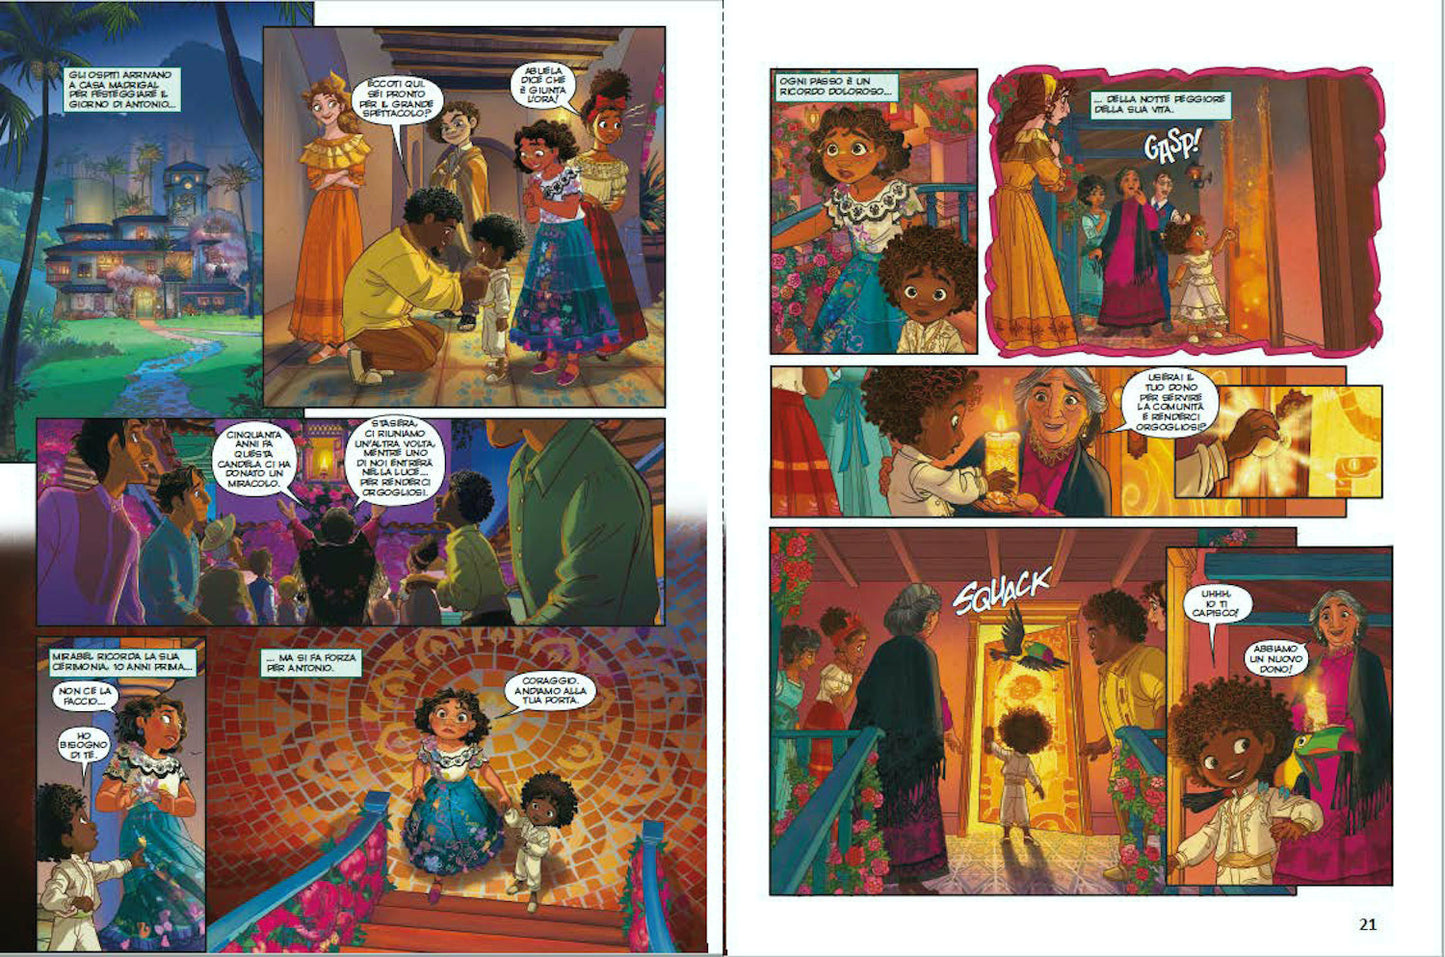 Encanto La storia a fumetti Edizione limitata::Disney 100 Anni di meravigliose emozioni